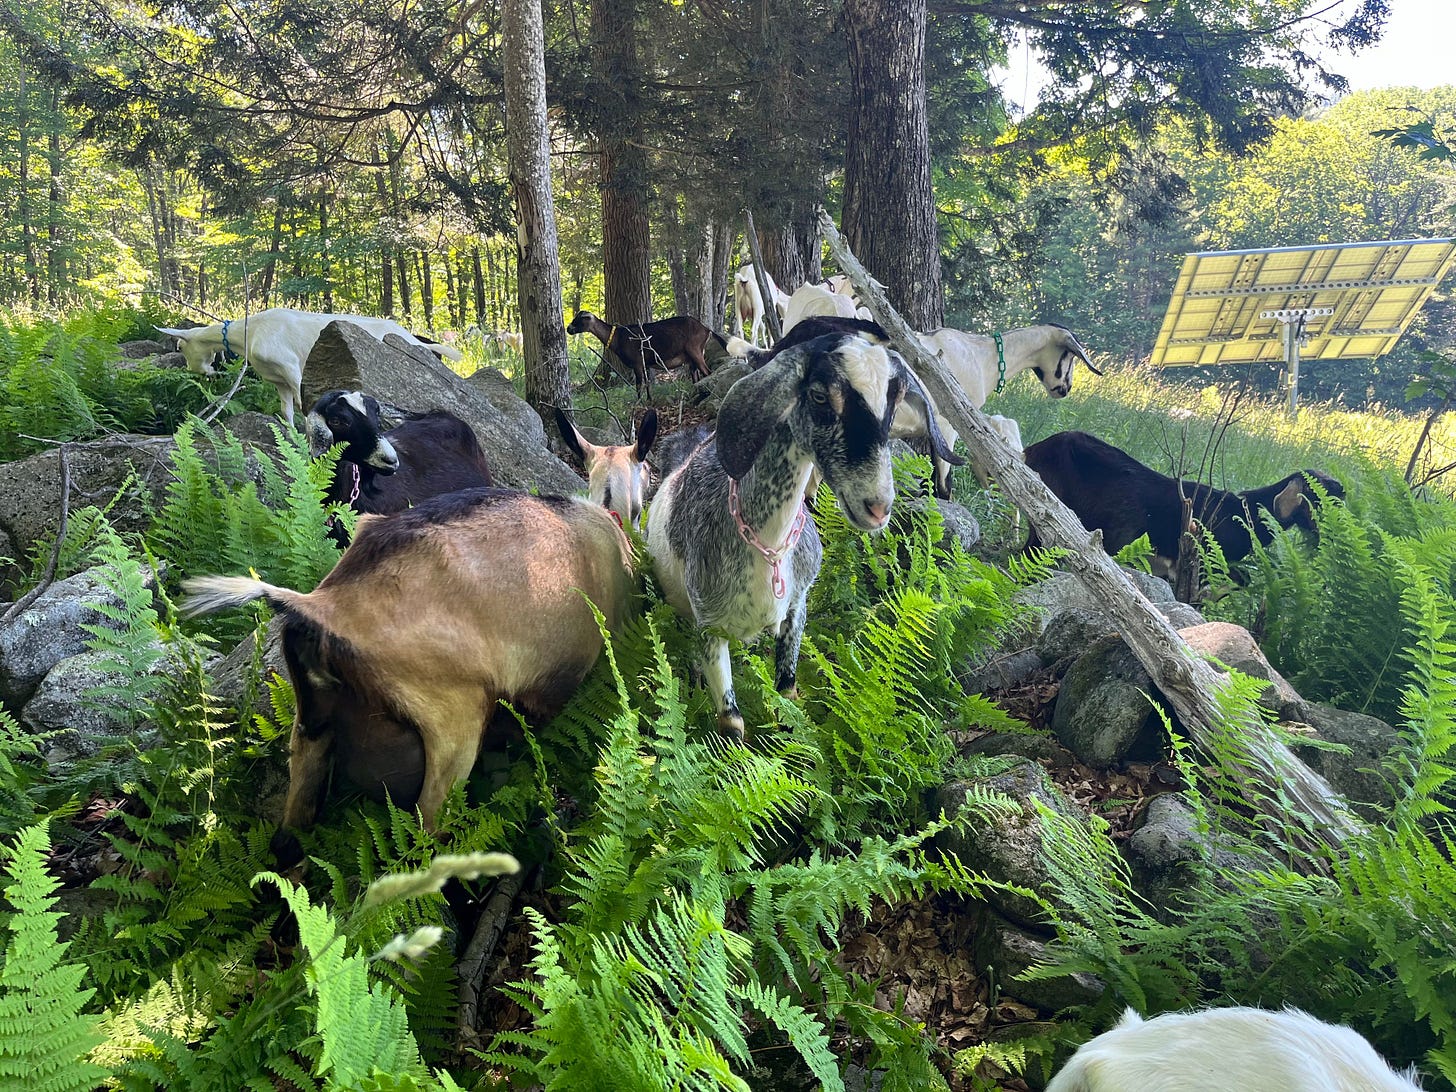 ten or so happy goats in a field